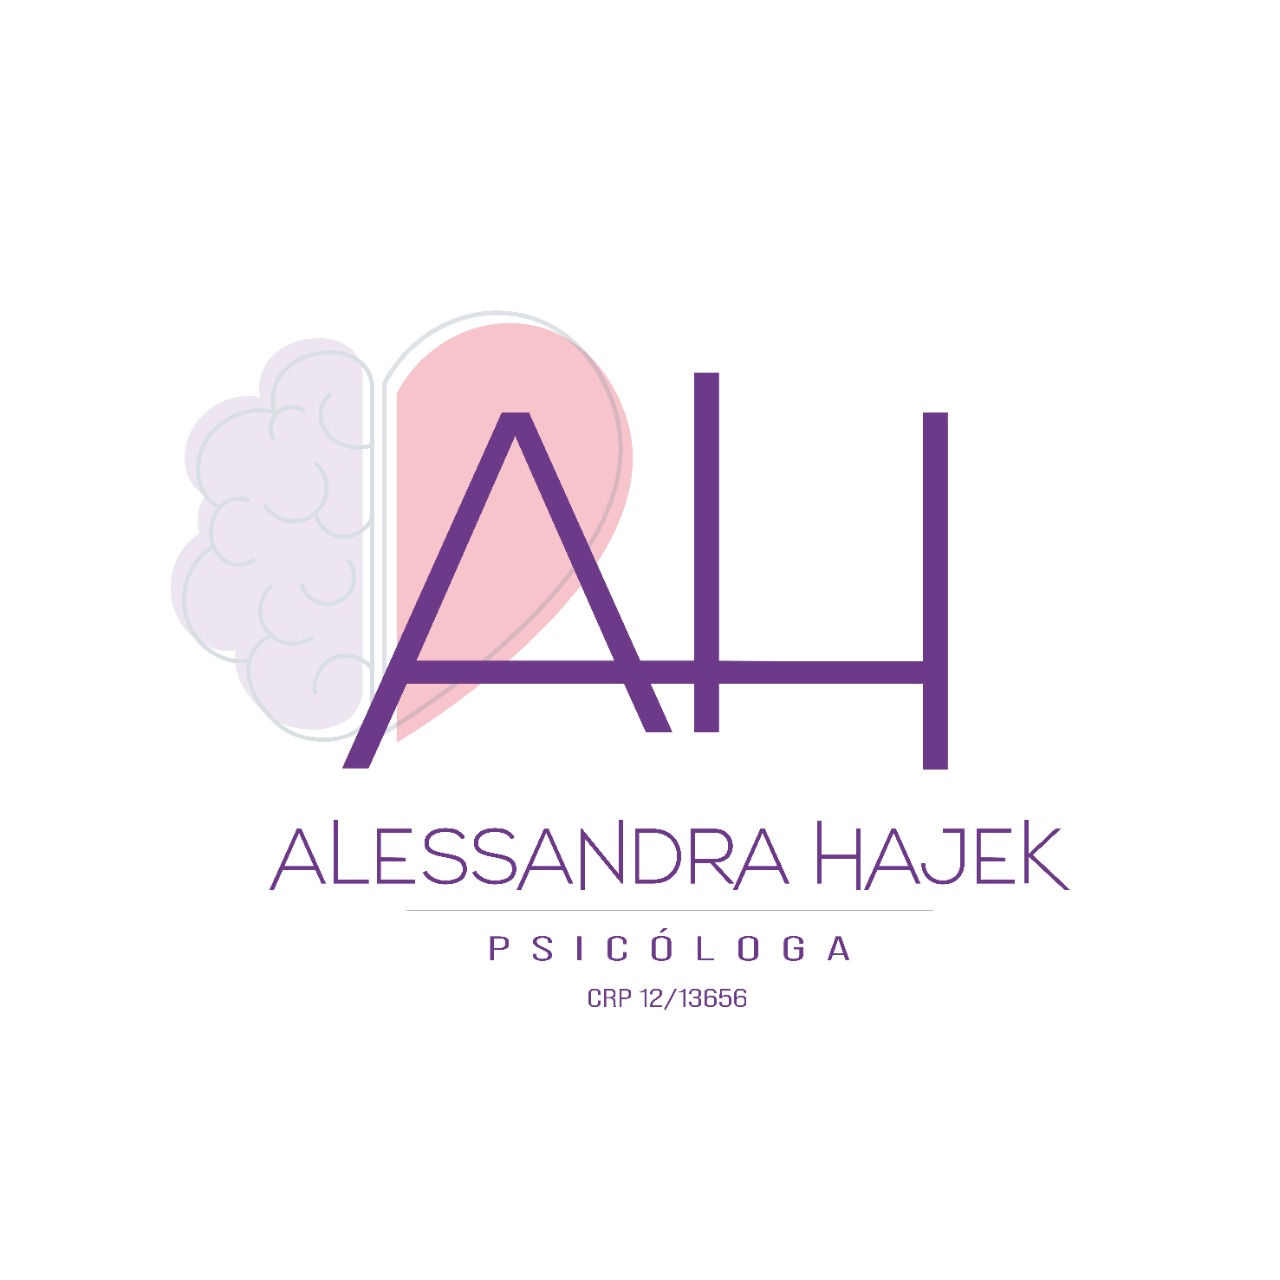 Alessandra Hajek